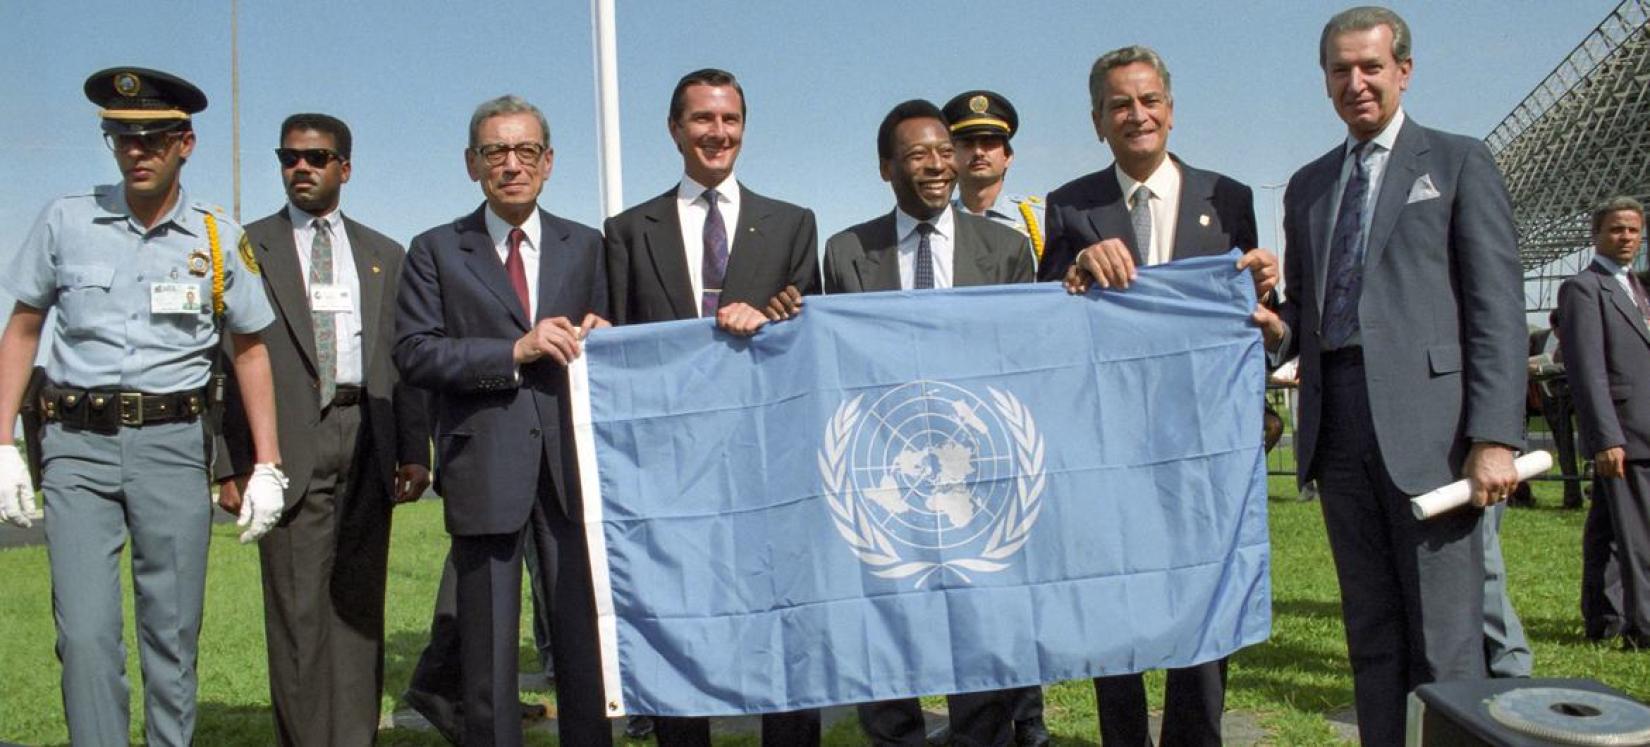 O astro do futebol Pelé e outras autoridades brasileiras são presenteados com a bandeira das Nações Unidas pelo ex-secretário-geral da ONU Boutros Boutros-Ghali